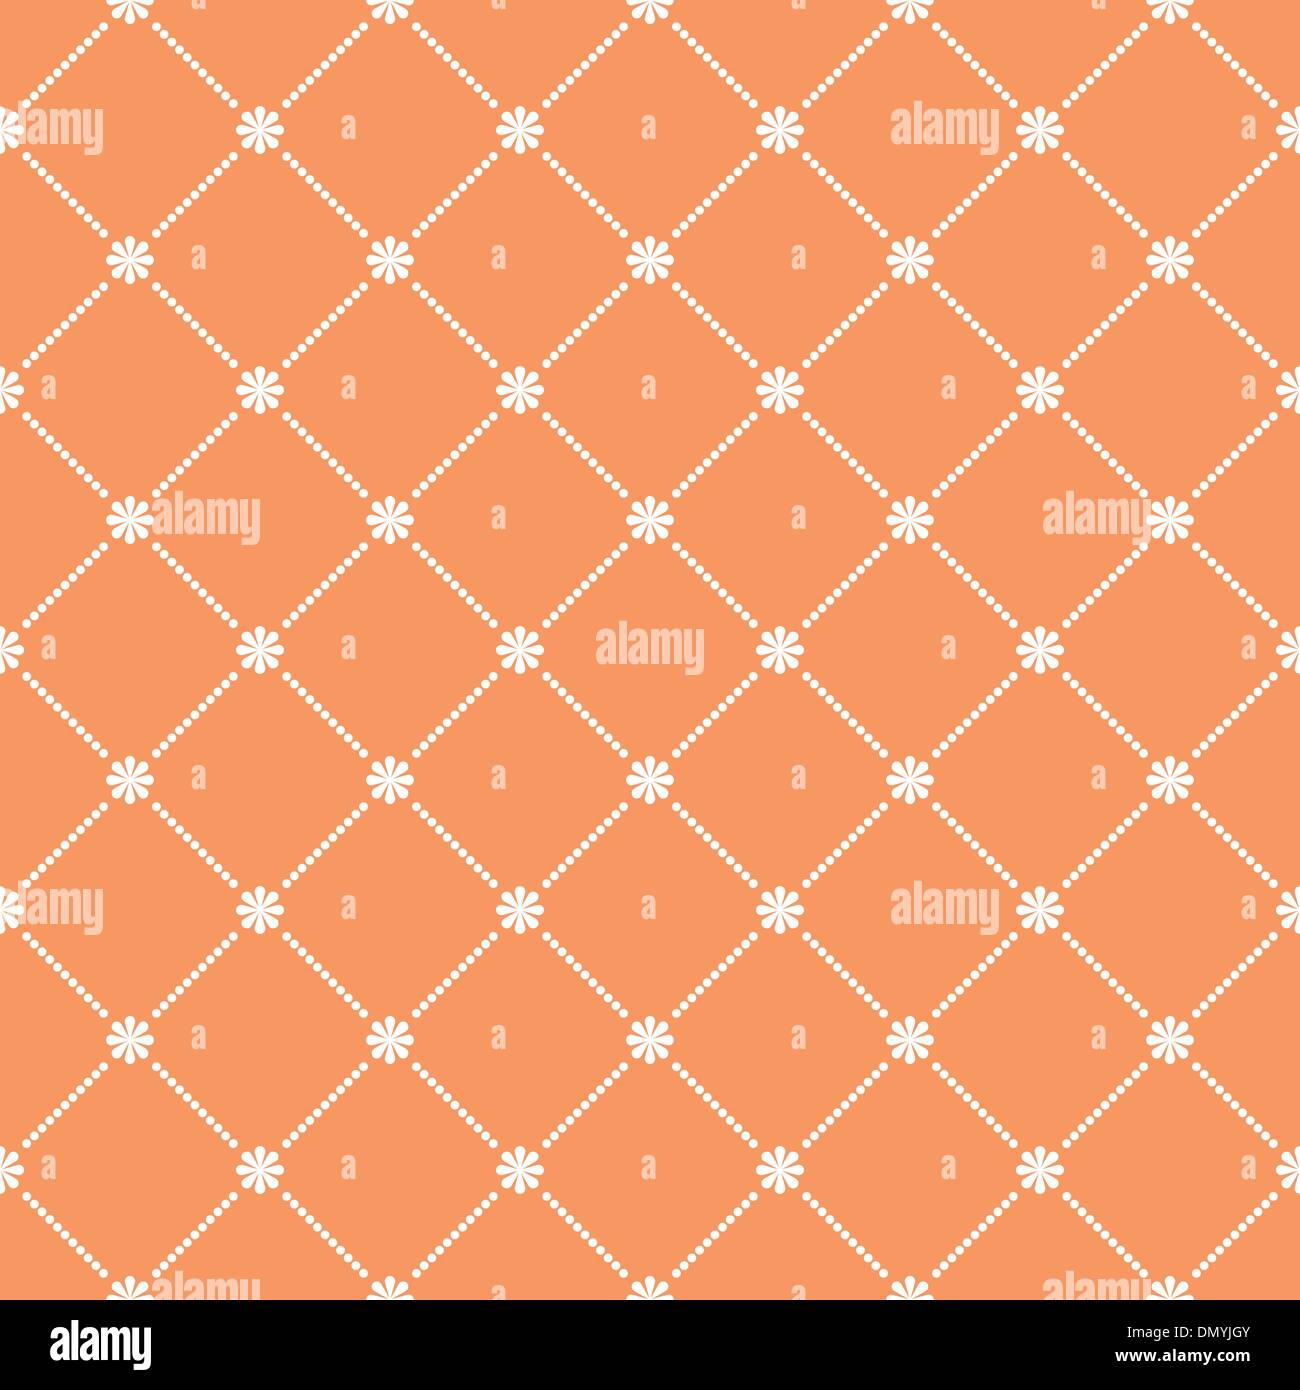 Seamless flower pattern wallpaper. EPS 8 Stock Vector